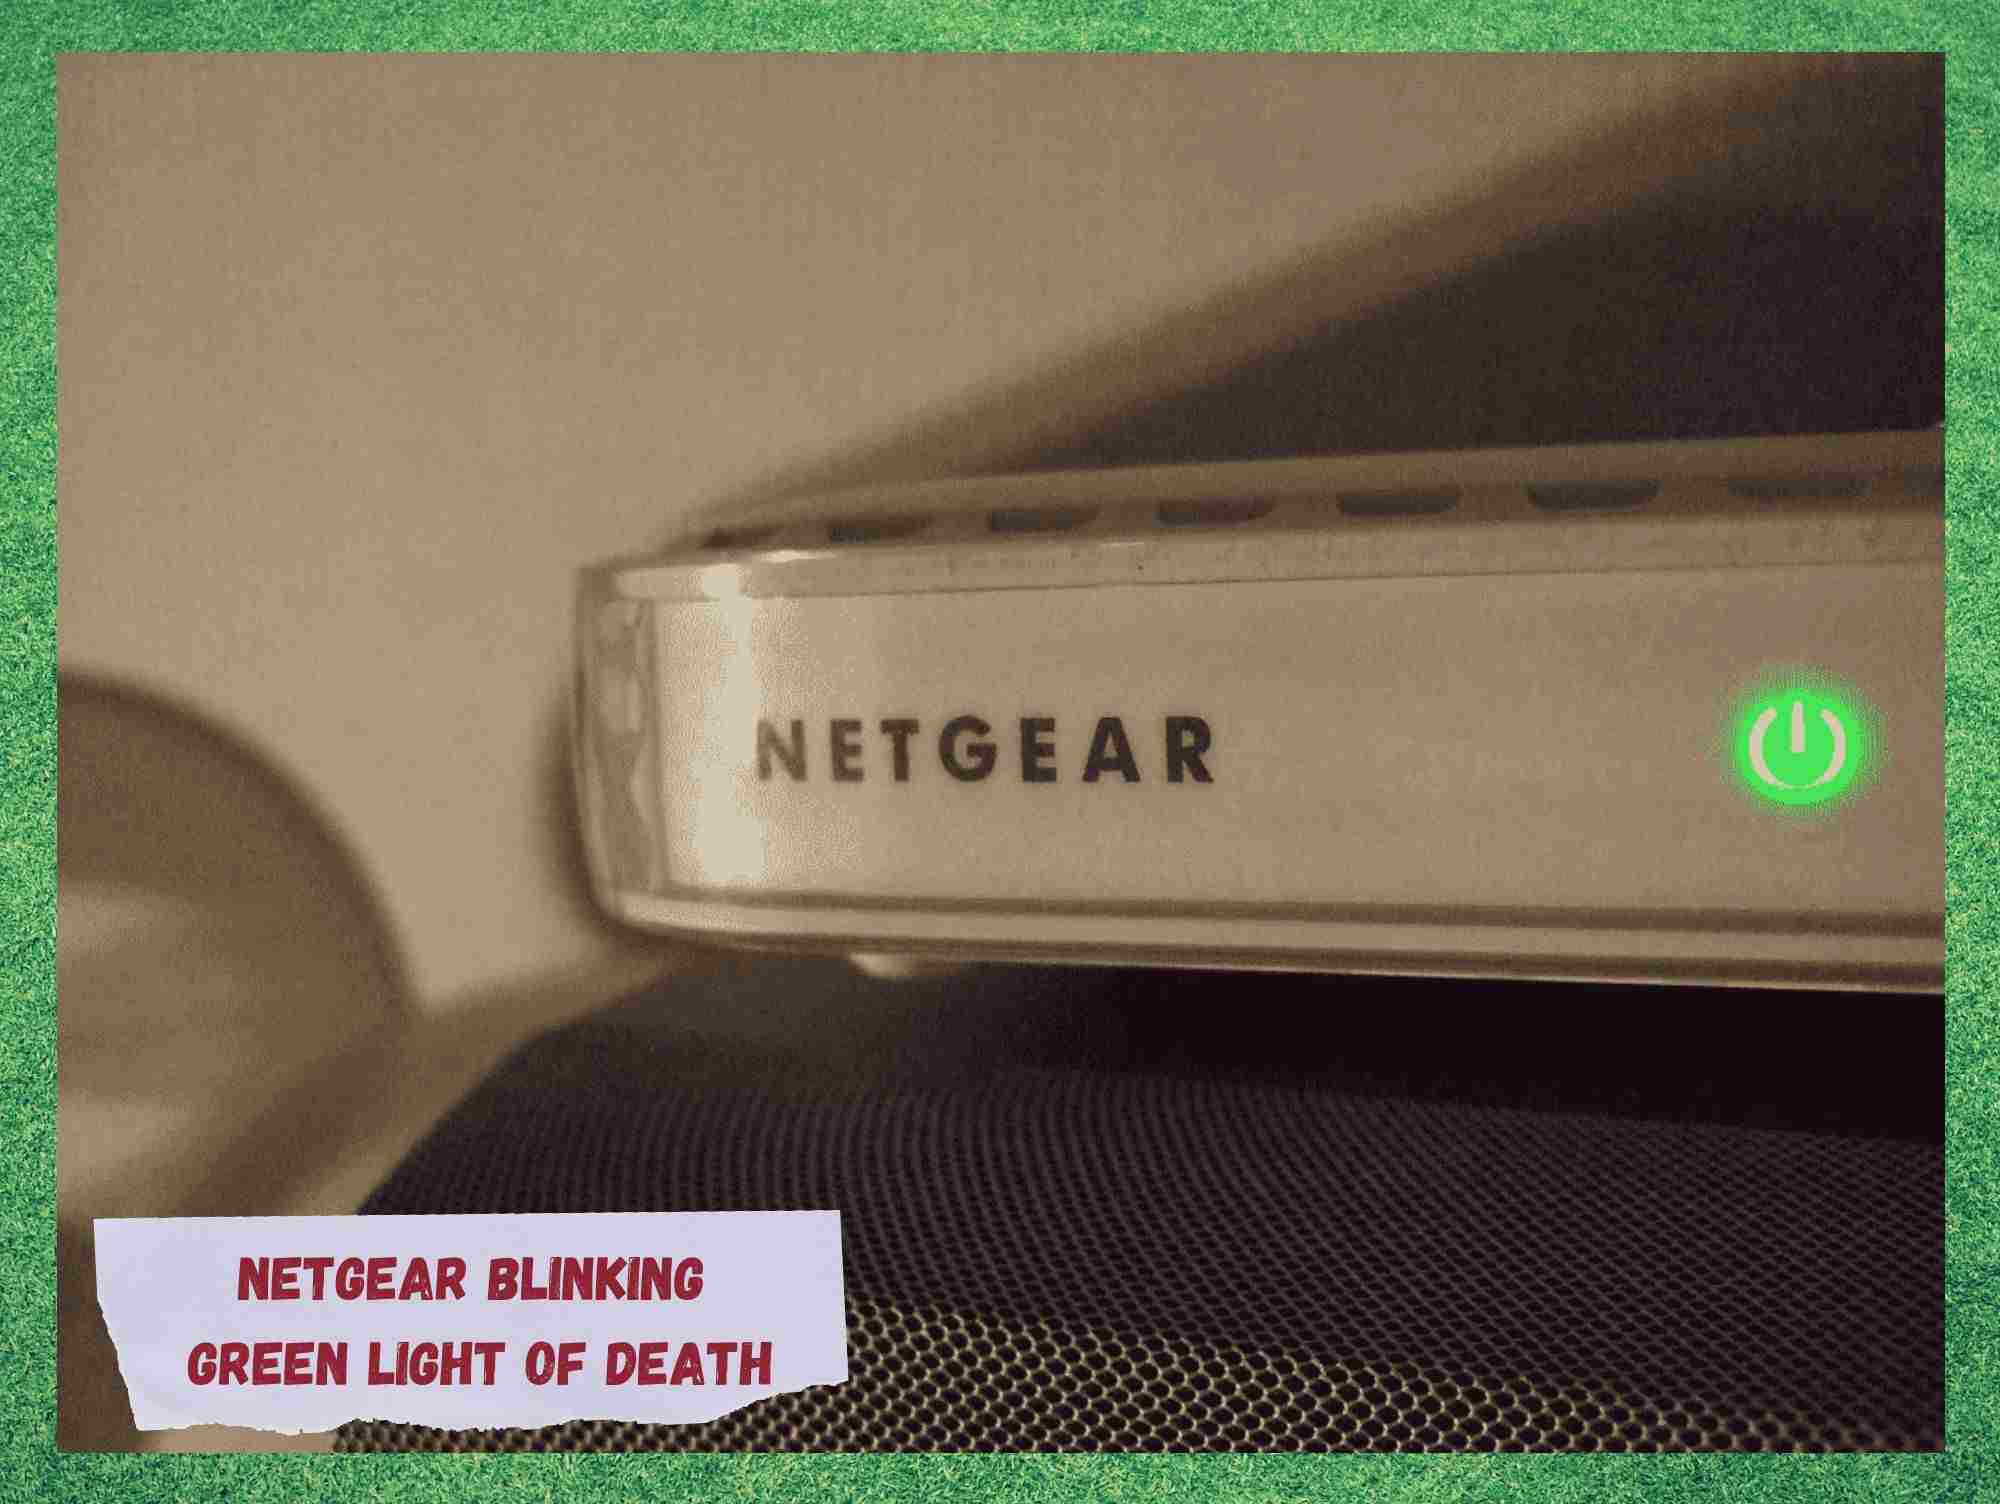 Netgear Blinking Green Light of Deathを修正するための7つのステップ。